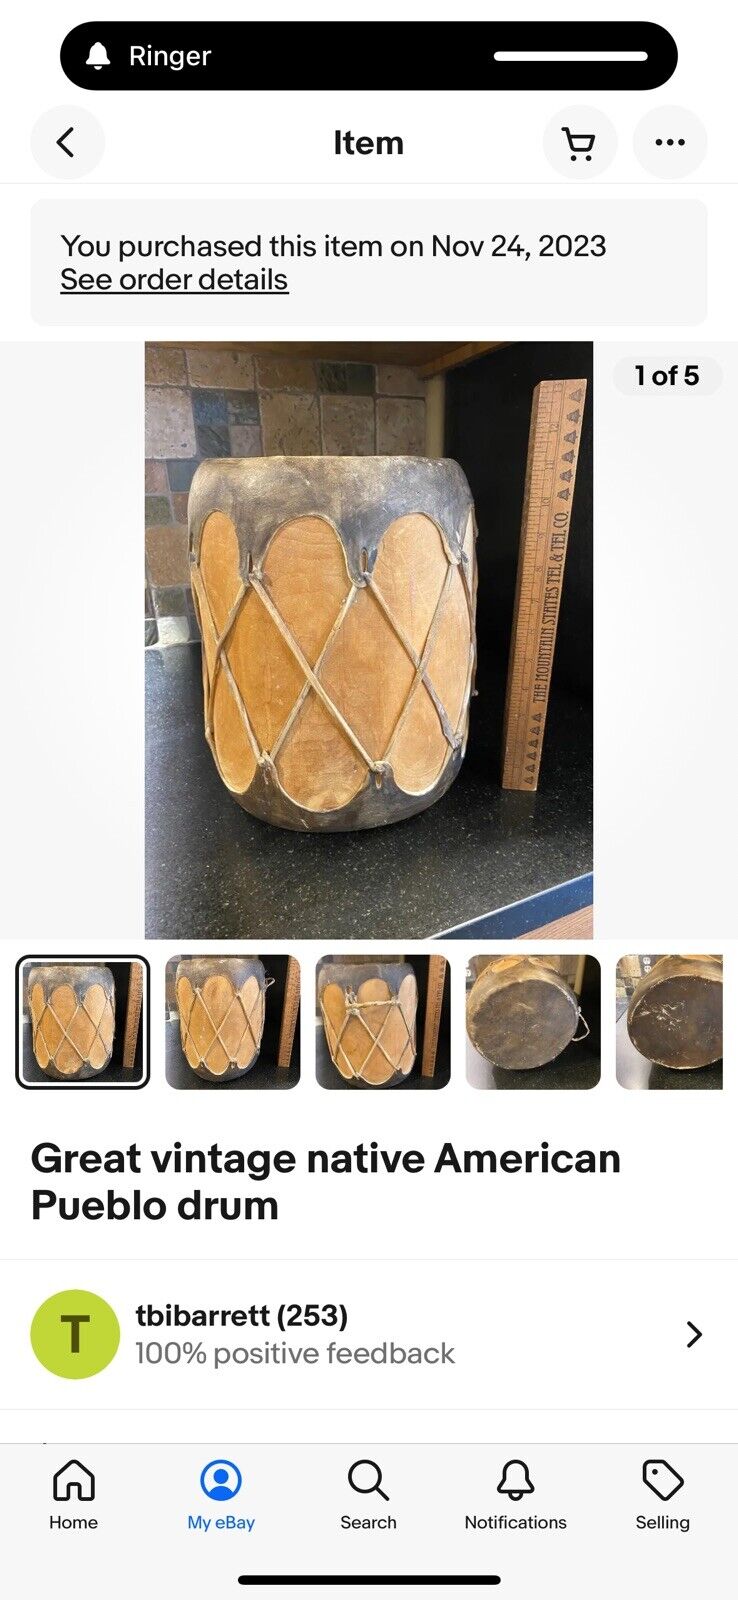 Great vintage native American Pueblo drum